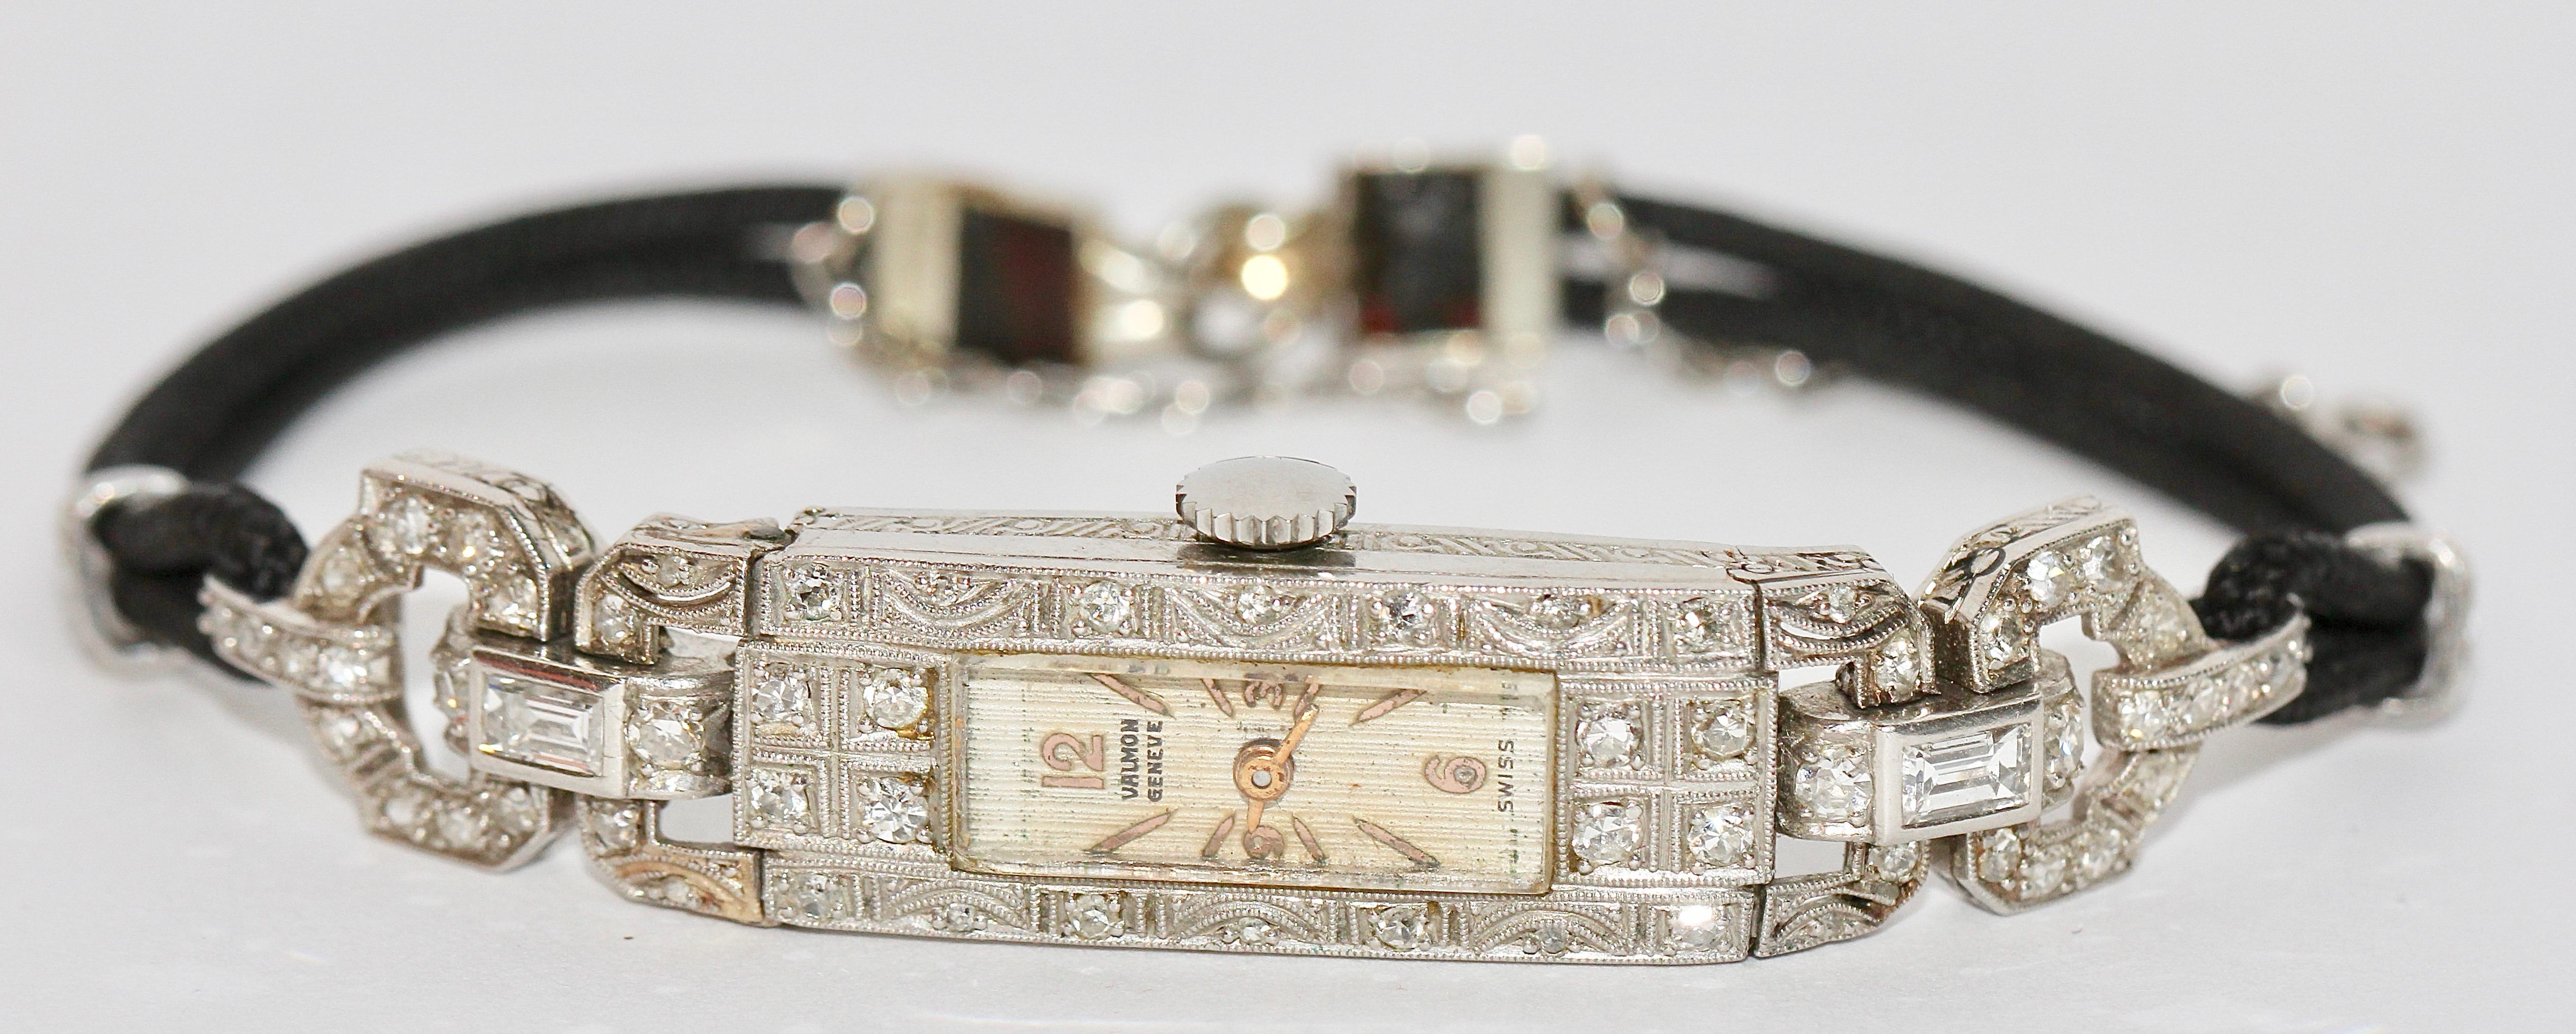 Bezaubernde Art Deco Damenarmbanduhr aus Platin mit Diamanten.

Manuelles Aufziehen.

Sehr guter Originalzustand.

Das Uhrwerk kann aufgezogen werden und funktioniert.

Maße ohne Armbänder: 60 mm x 10,5 mm.